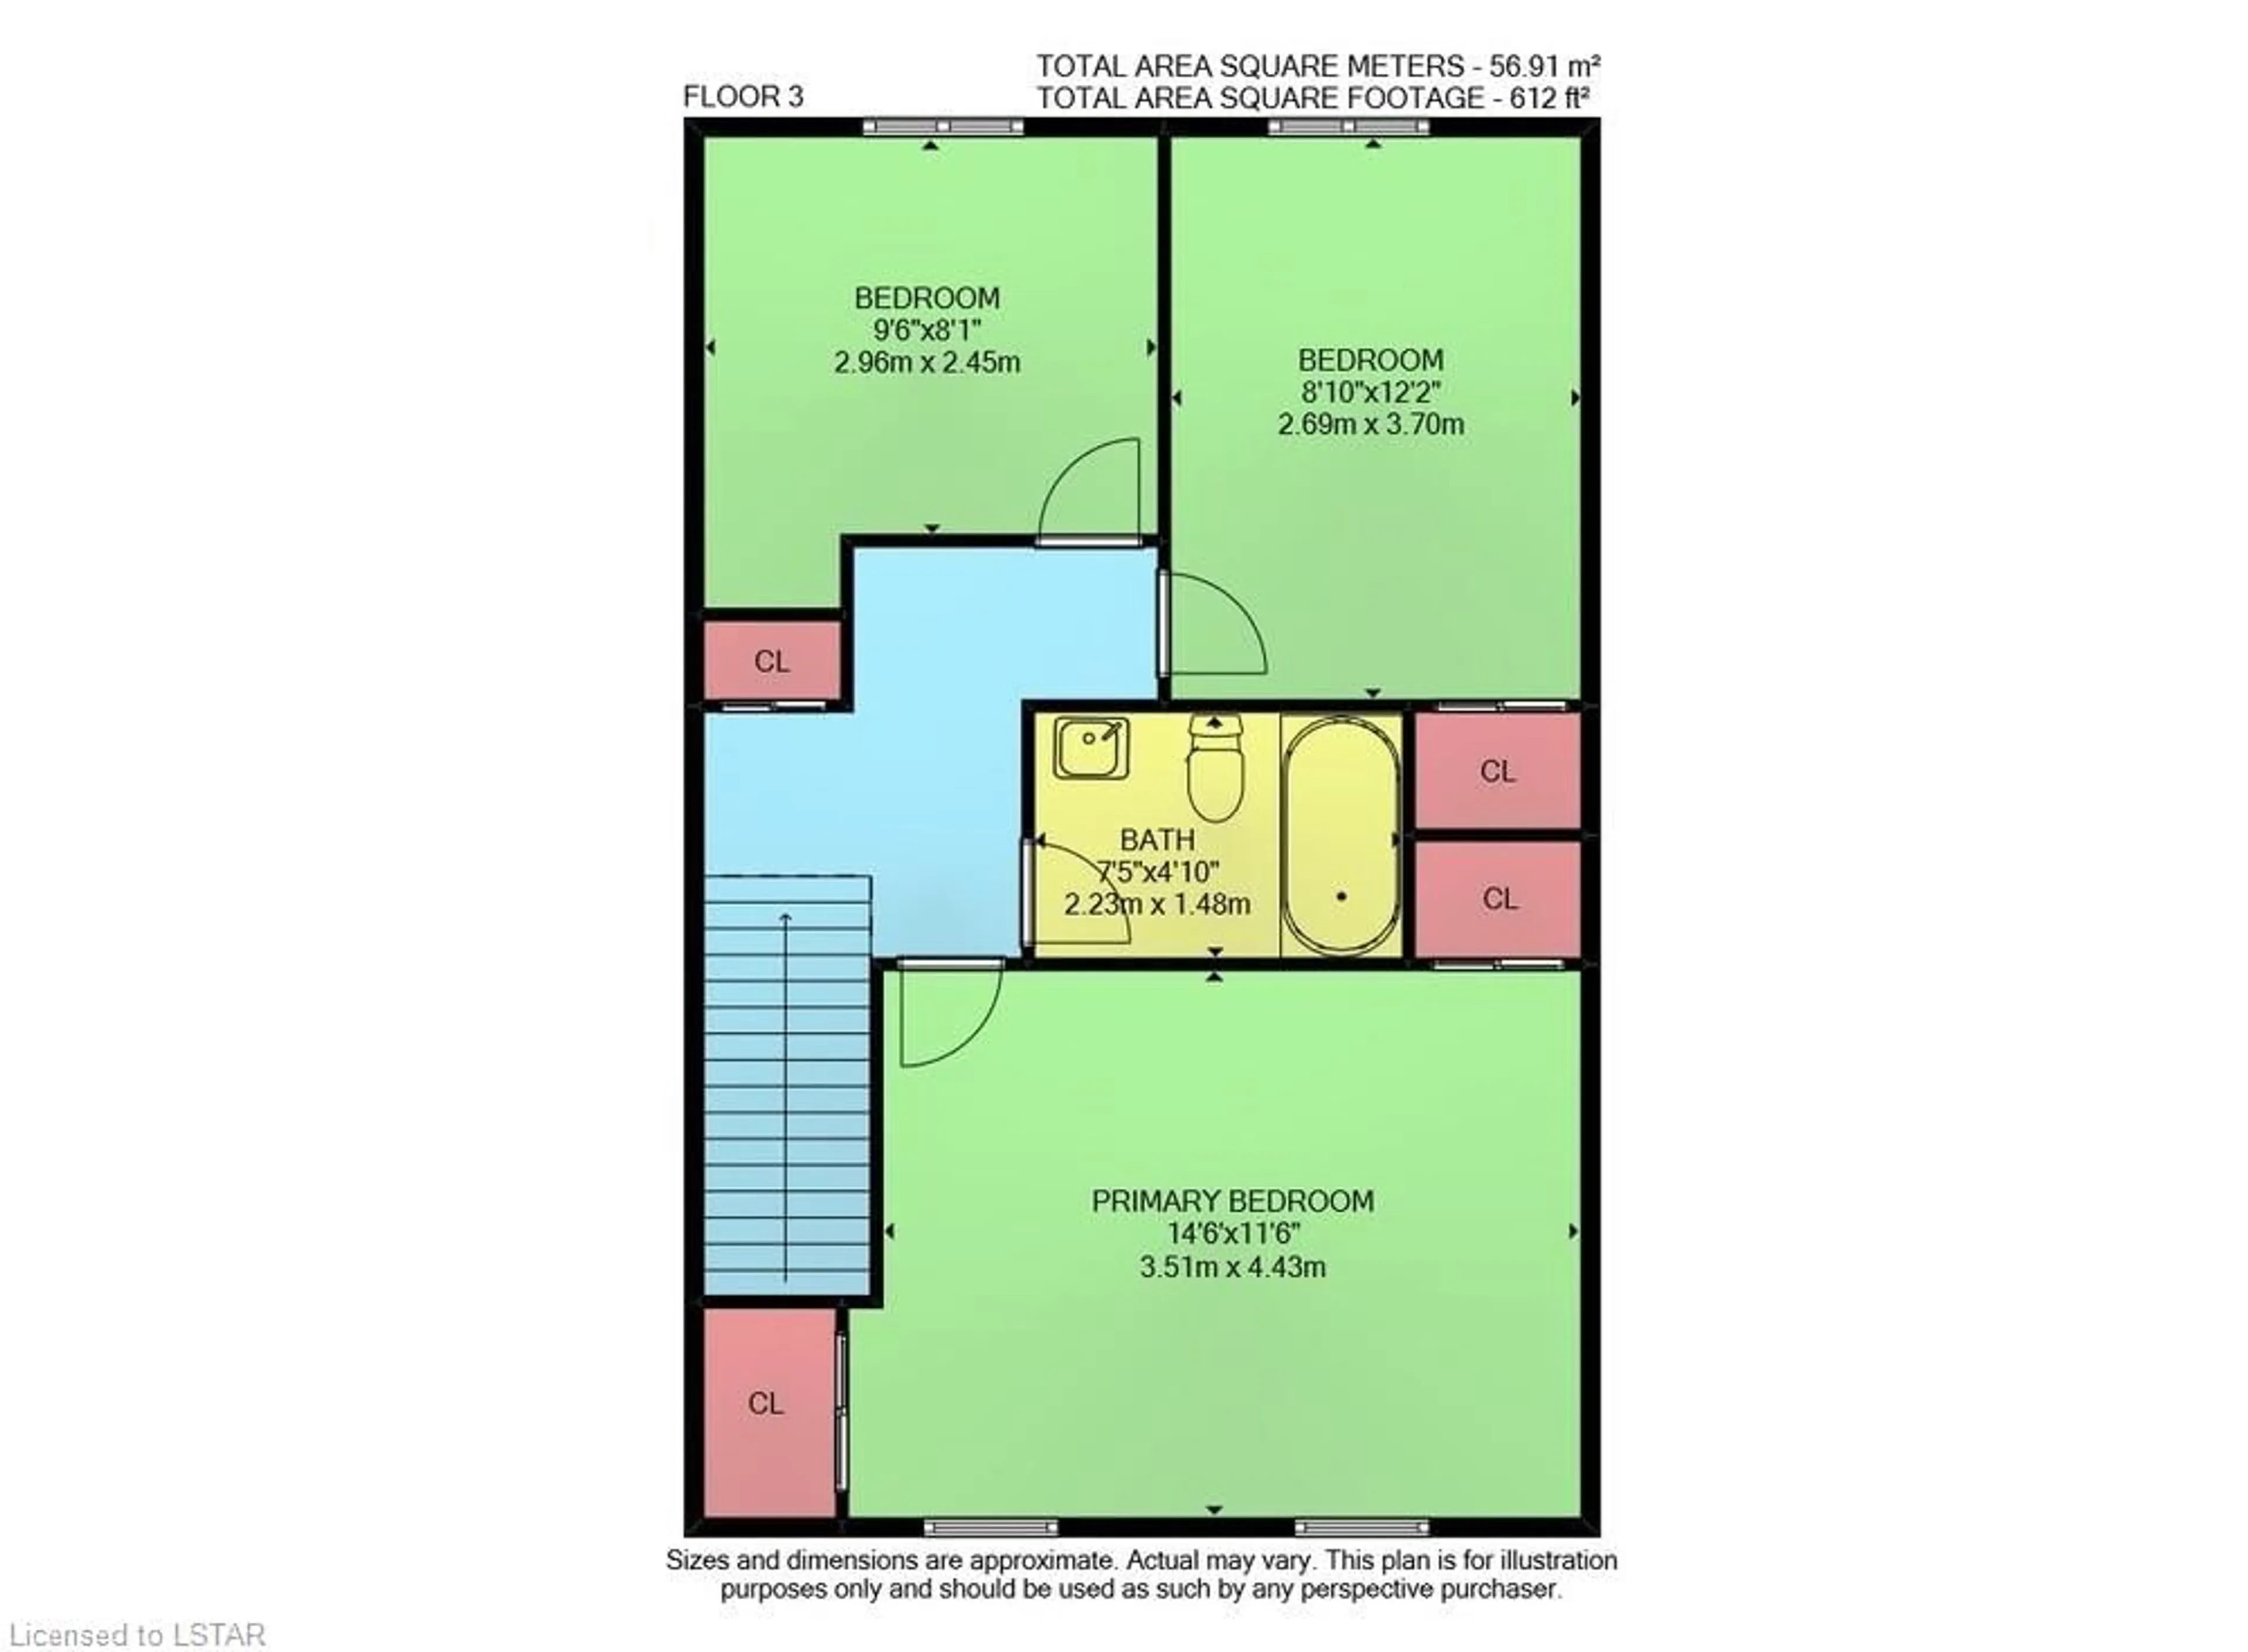 Floor plan for 1330 Jalna Blvd #220, London Ontario N6E 2H7